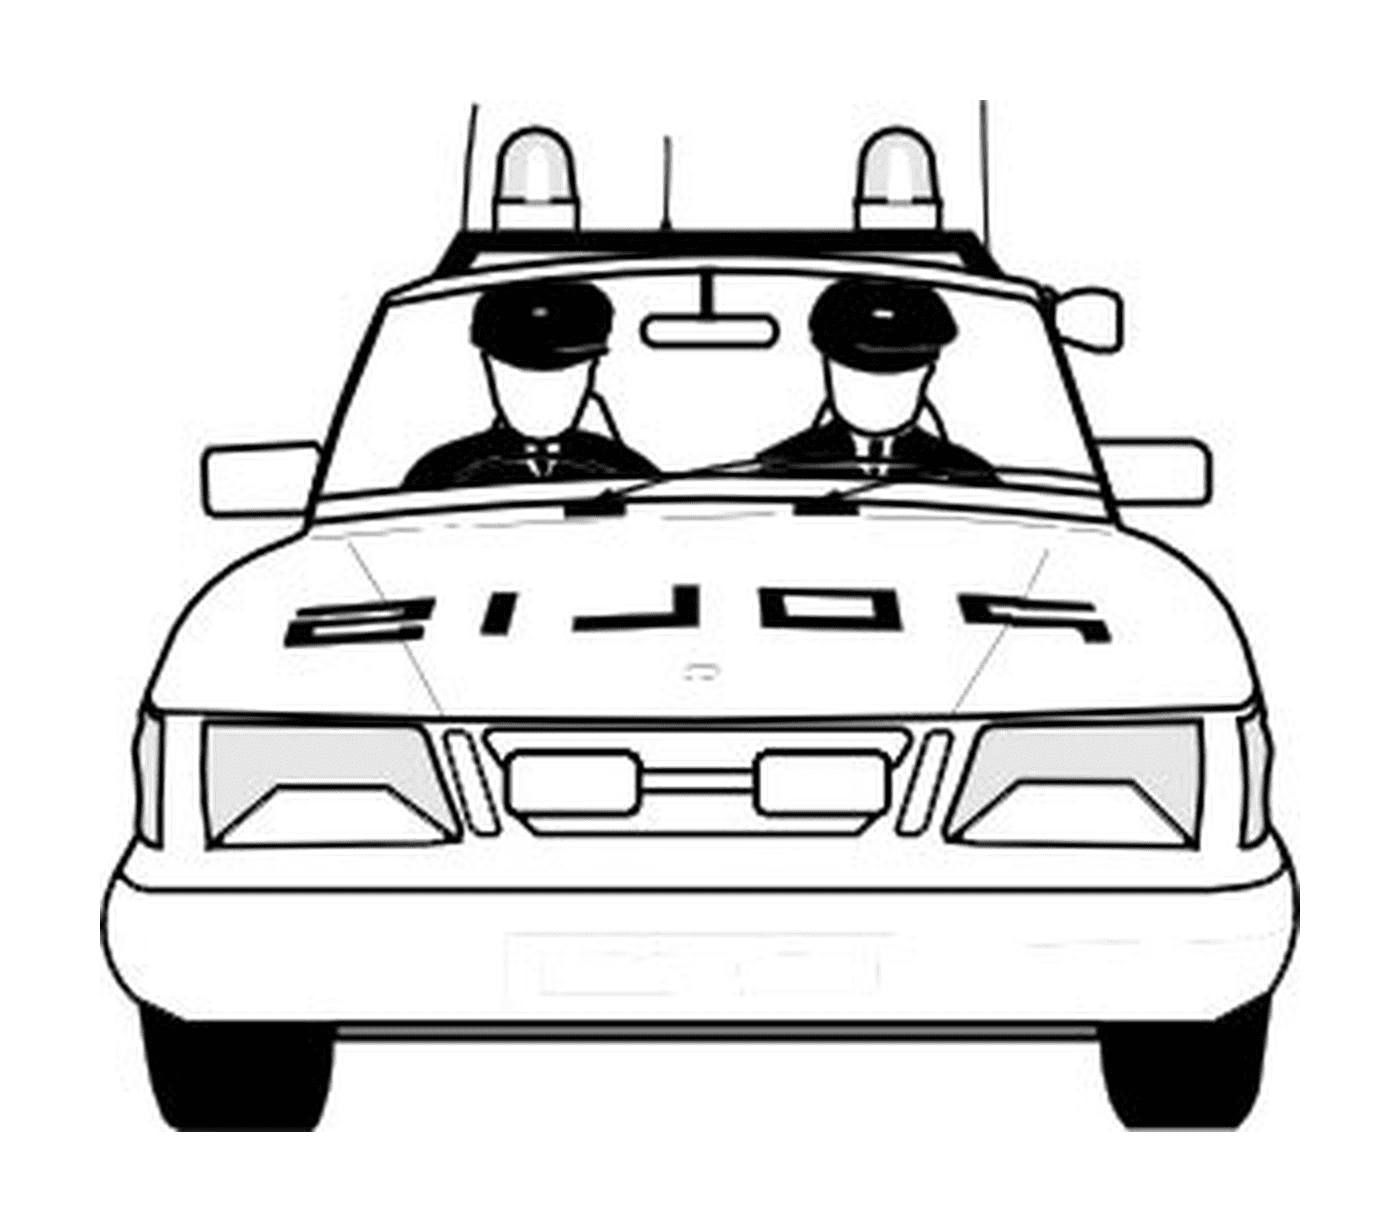  Полицейская машина, два офицера сзади 